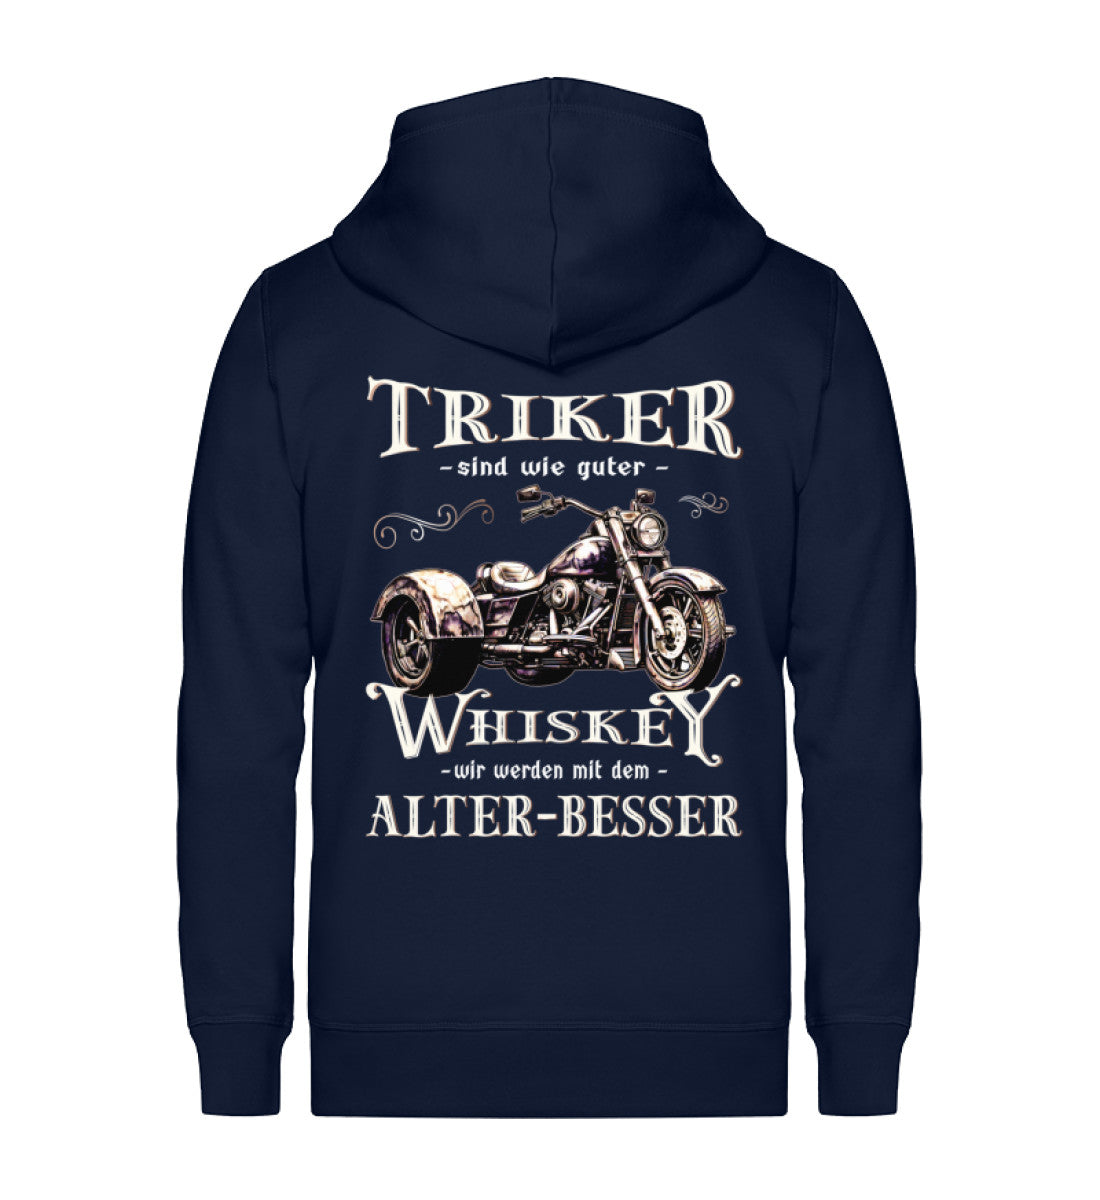 Eine Reißverschluss-Jacke für Trike Fahrer von Wingbikers mit dem Aufdruck, Triker sind wie guter Whiskey - Wir werden mit dem Alter besser, in navy blau.